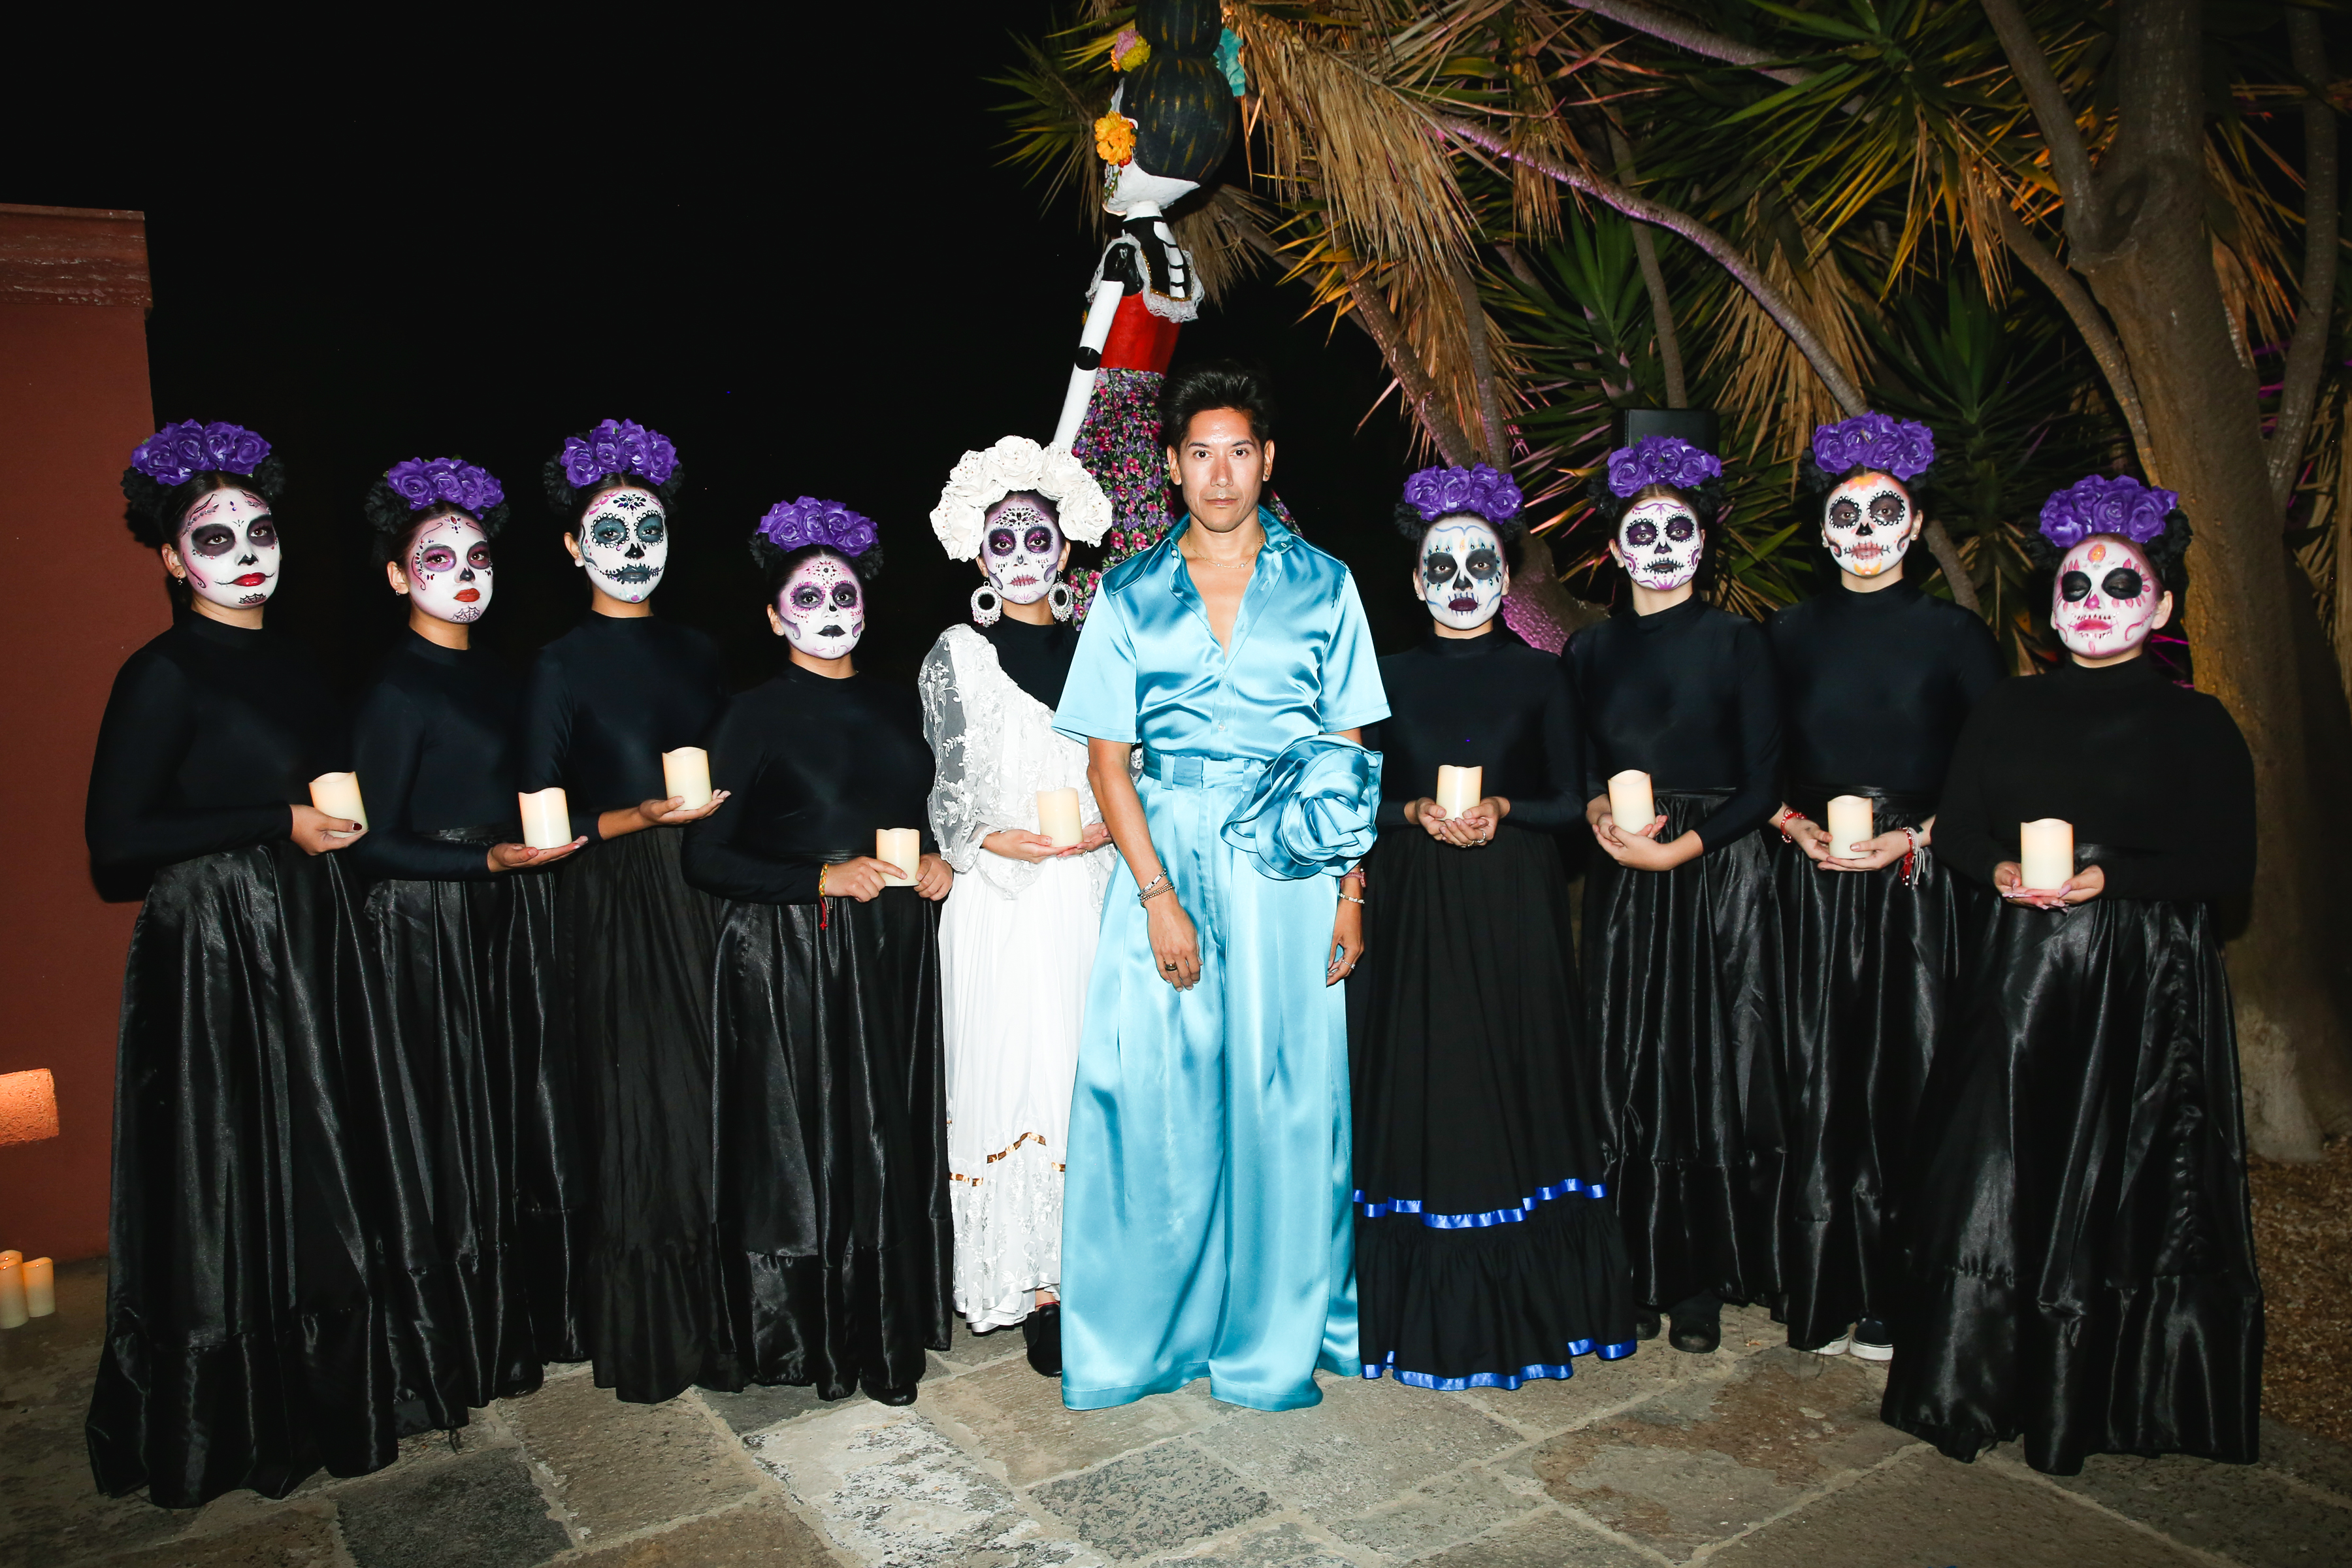 Take a look at Vanessa Bryant 's Dia de Los Muertos look